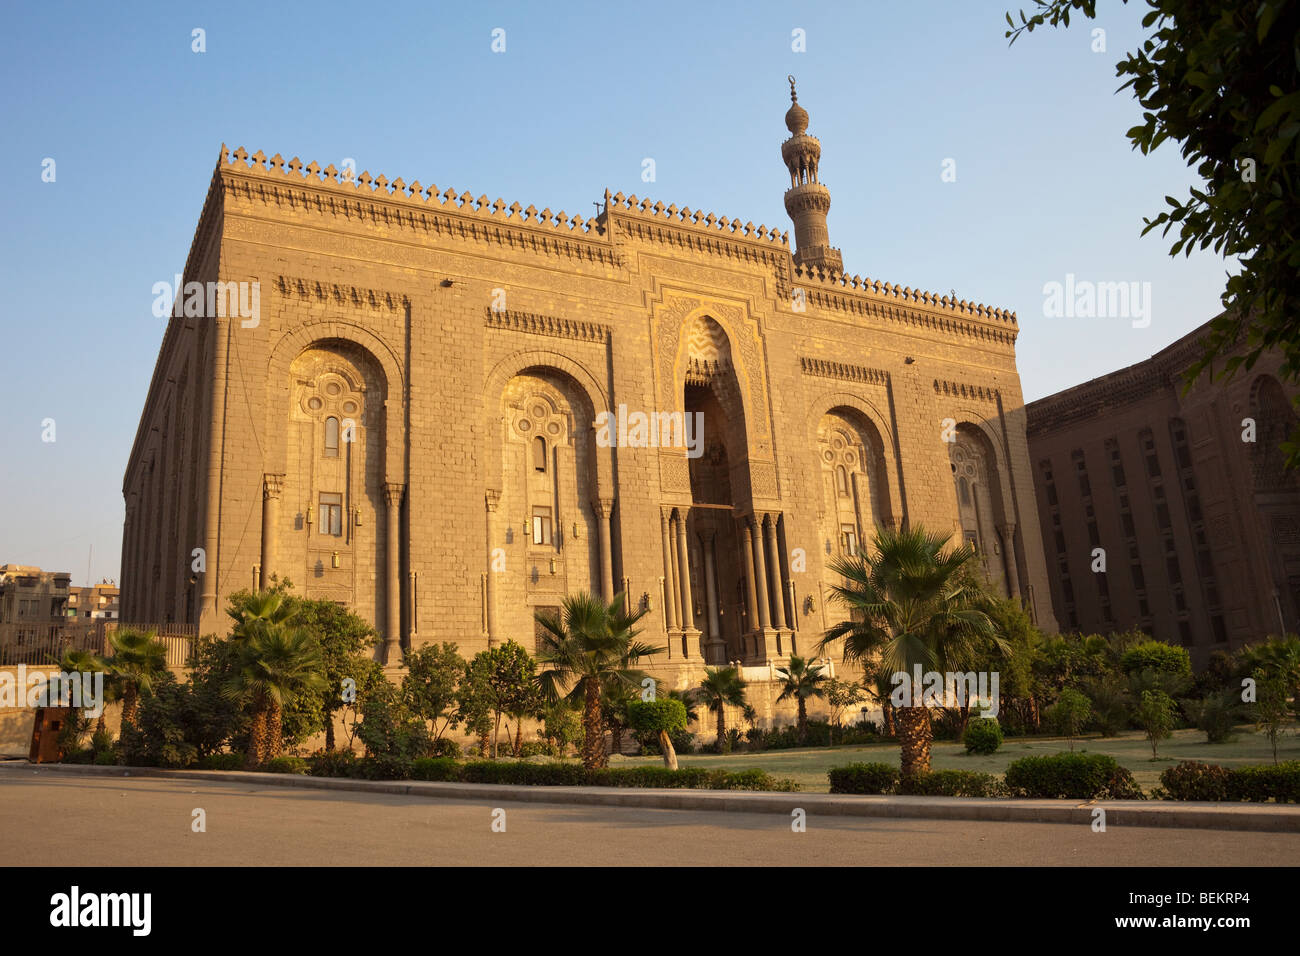 facade of mosque of al-Rifai, Cairo, Egypt Stock Photo